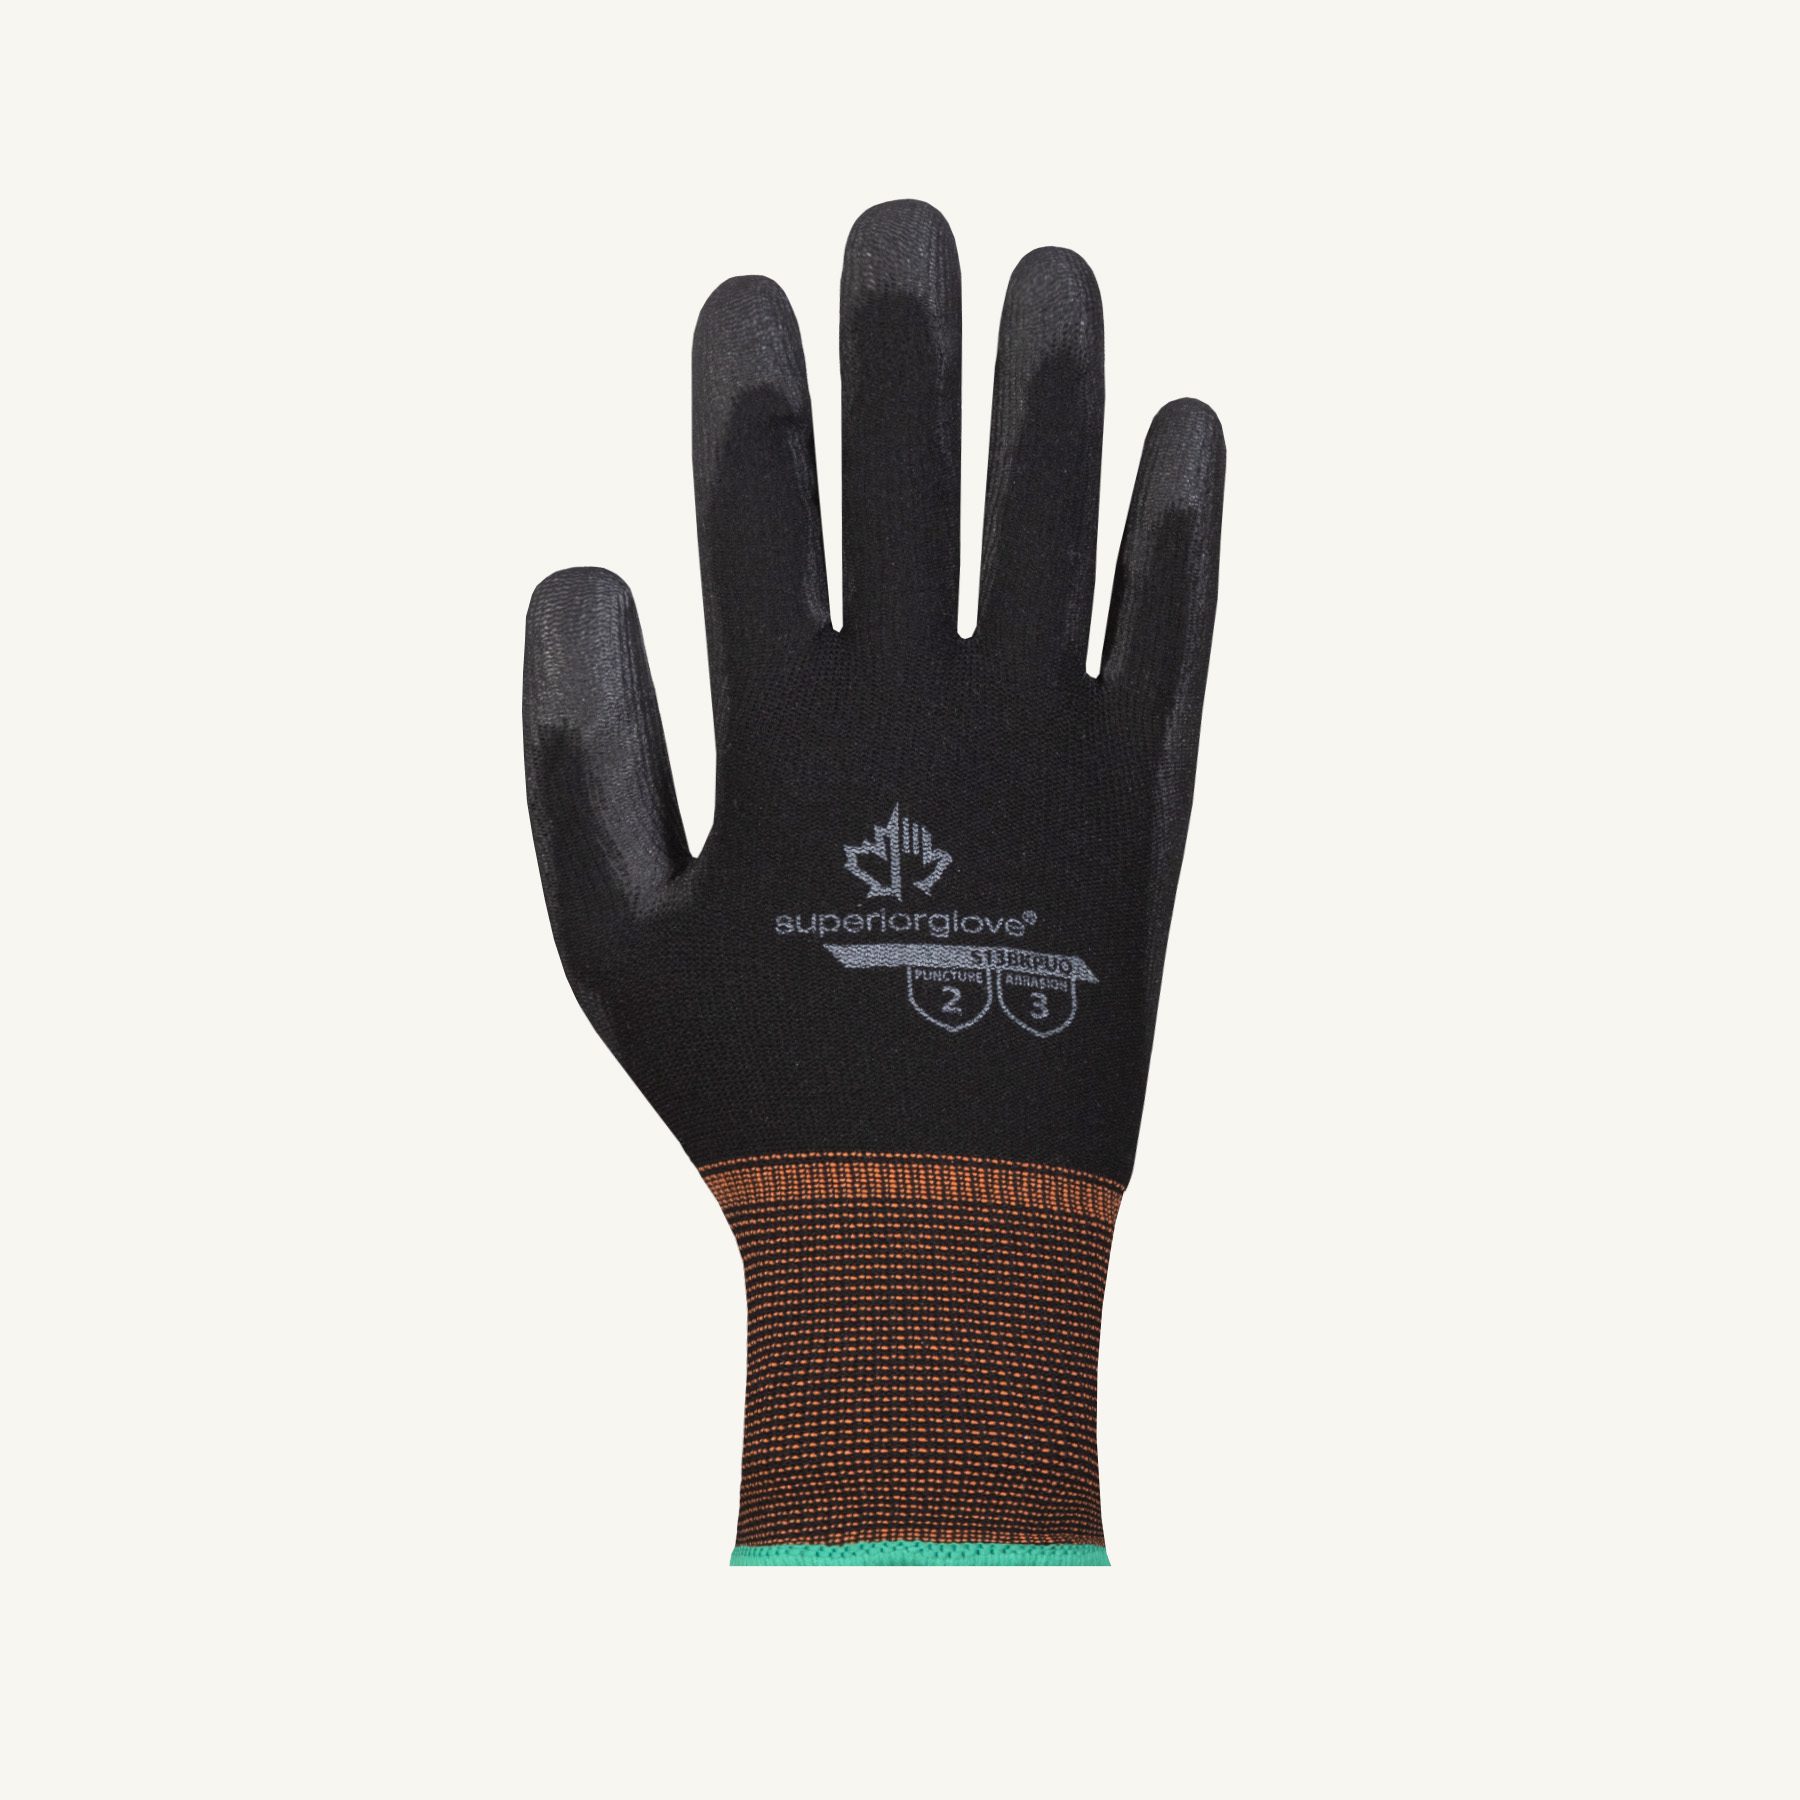 Superior Glove Superior Touch® S13BKPUQ